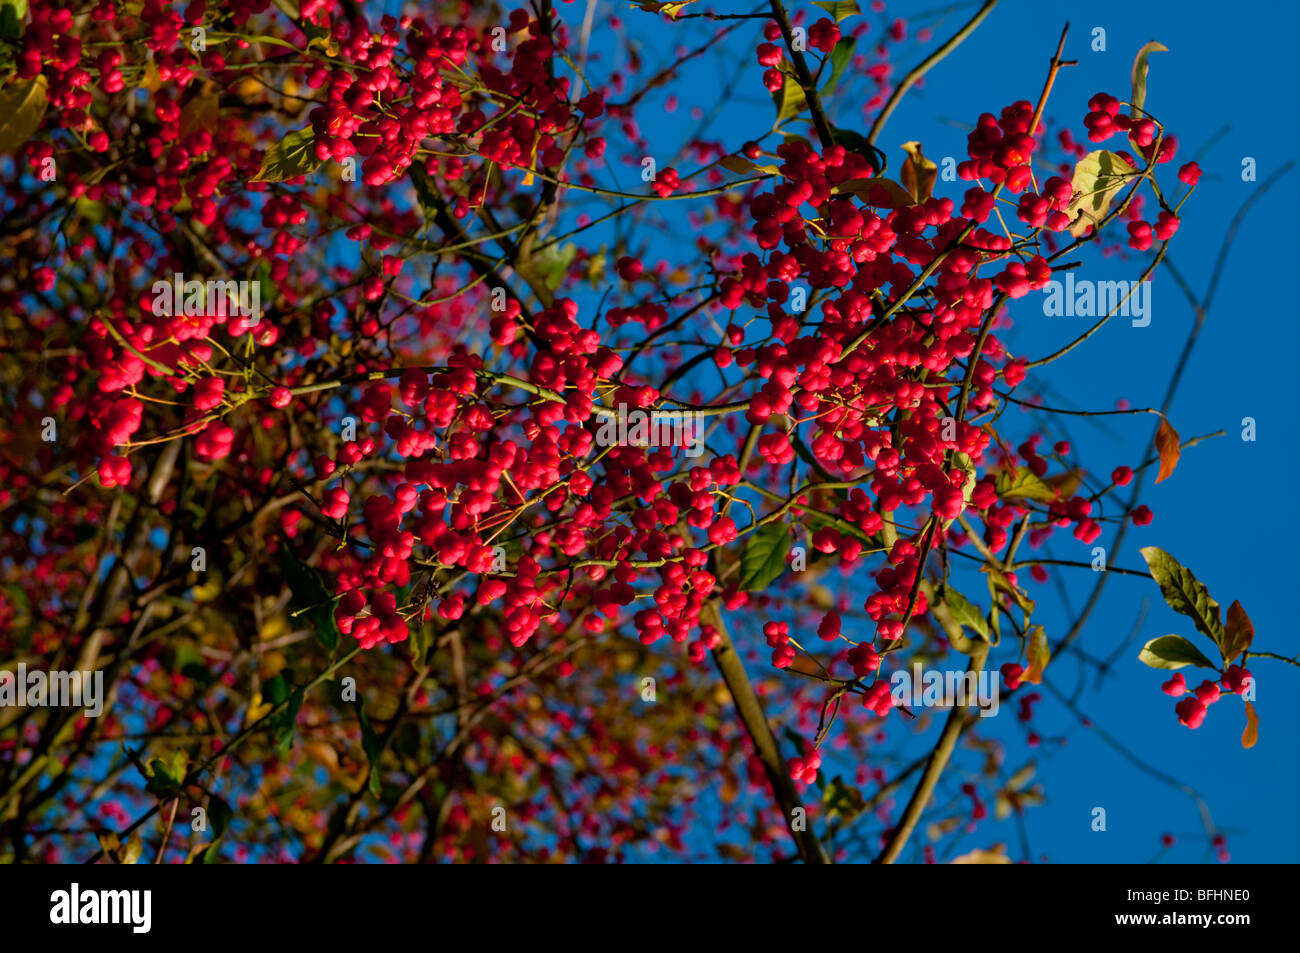 Europa, Regno Unito, Inghilterra, Surrey, albero di mandrino a bacca rossa Foto Stock